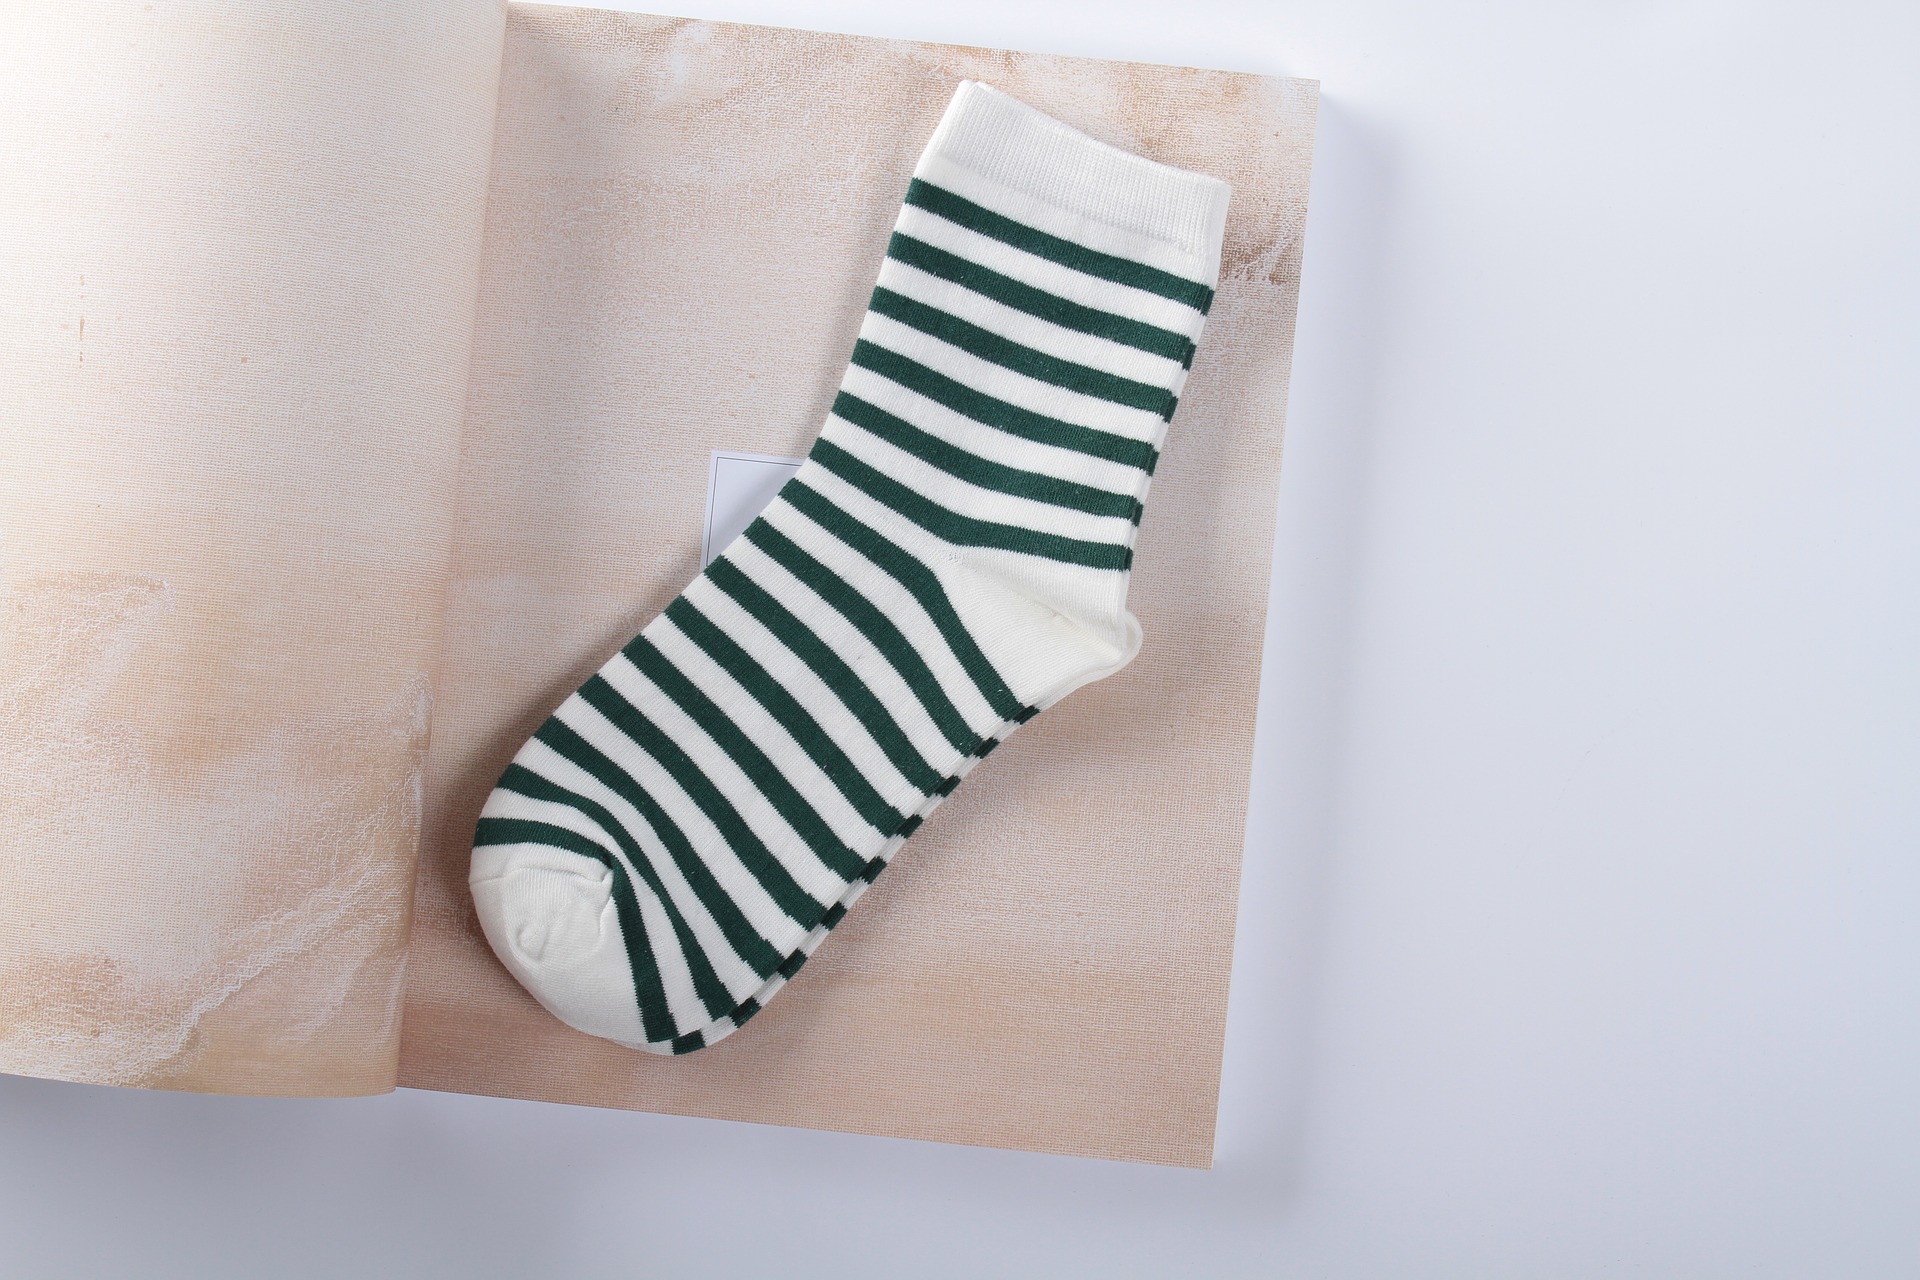 So manche Socke wird nach der Trennung stiefbrüderlich mit einem fremden Partner Zwangsverheiratet. Quelle: pixabay.de